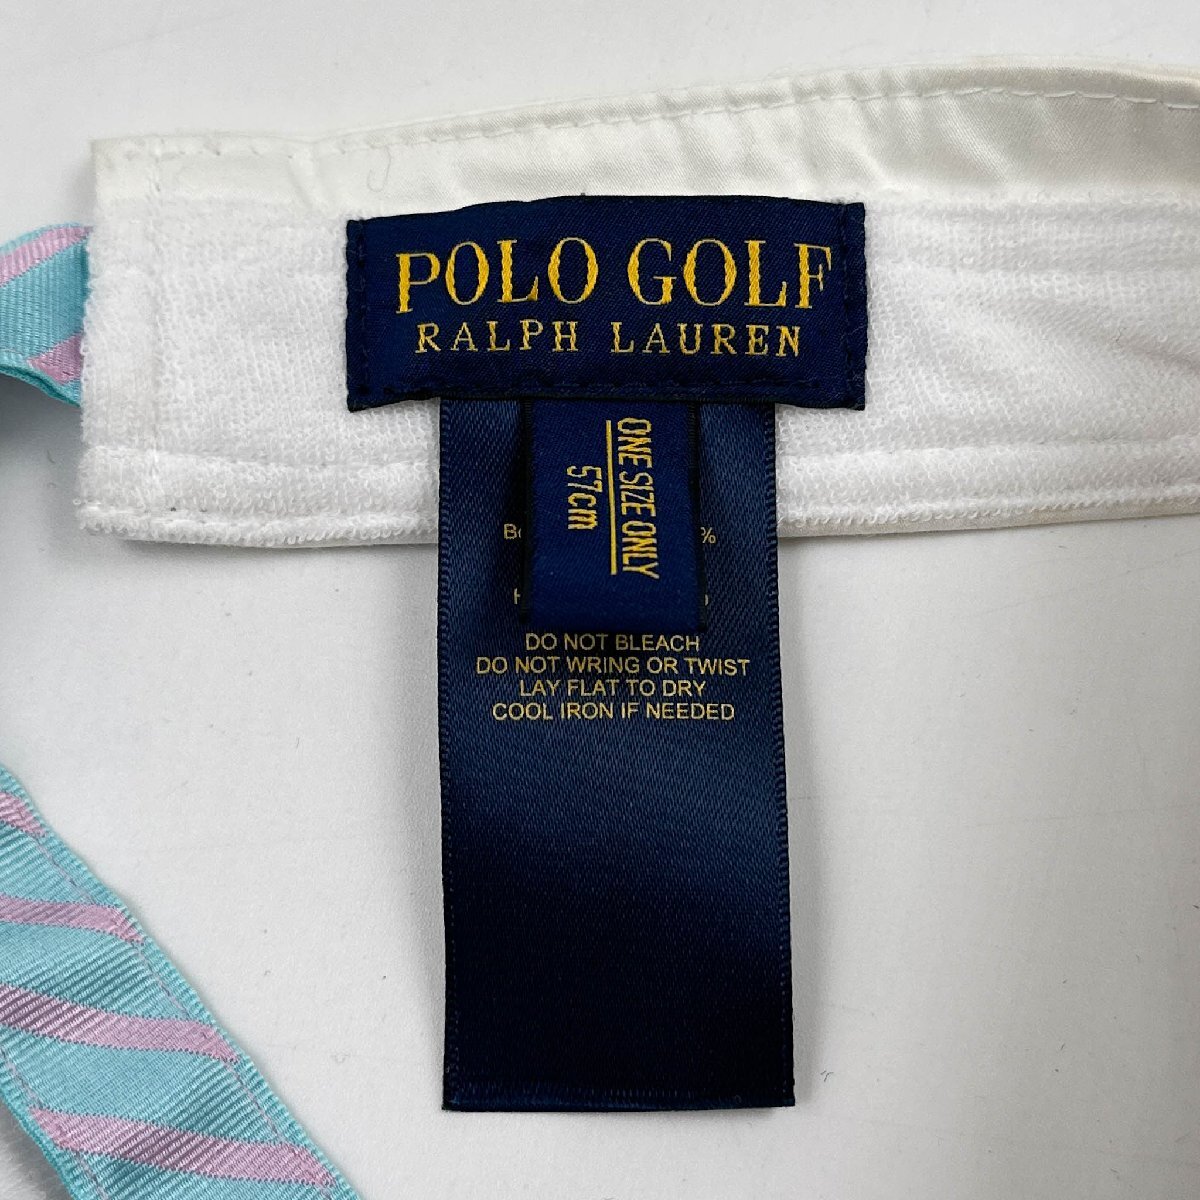 POLO GOLF RALPH LAUREN ポロゴルフ ラルフローレン サンバイザー 帽子 57cm / 白 ホワイト_画像7